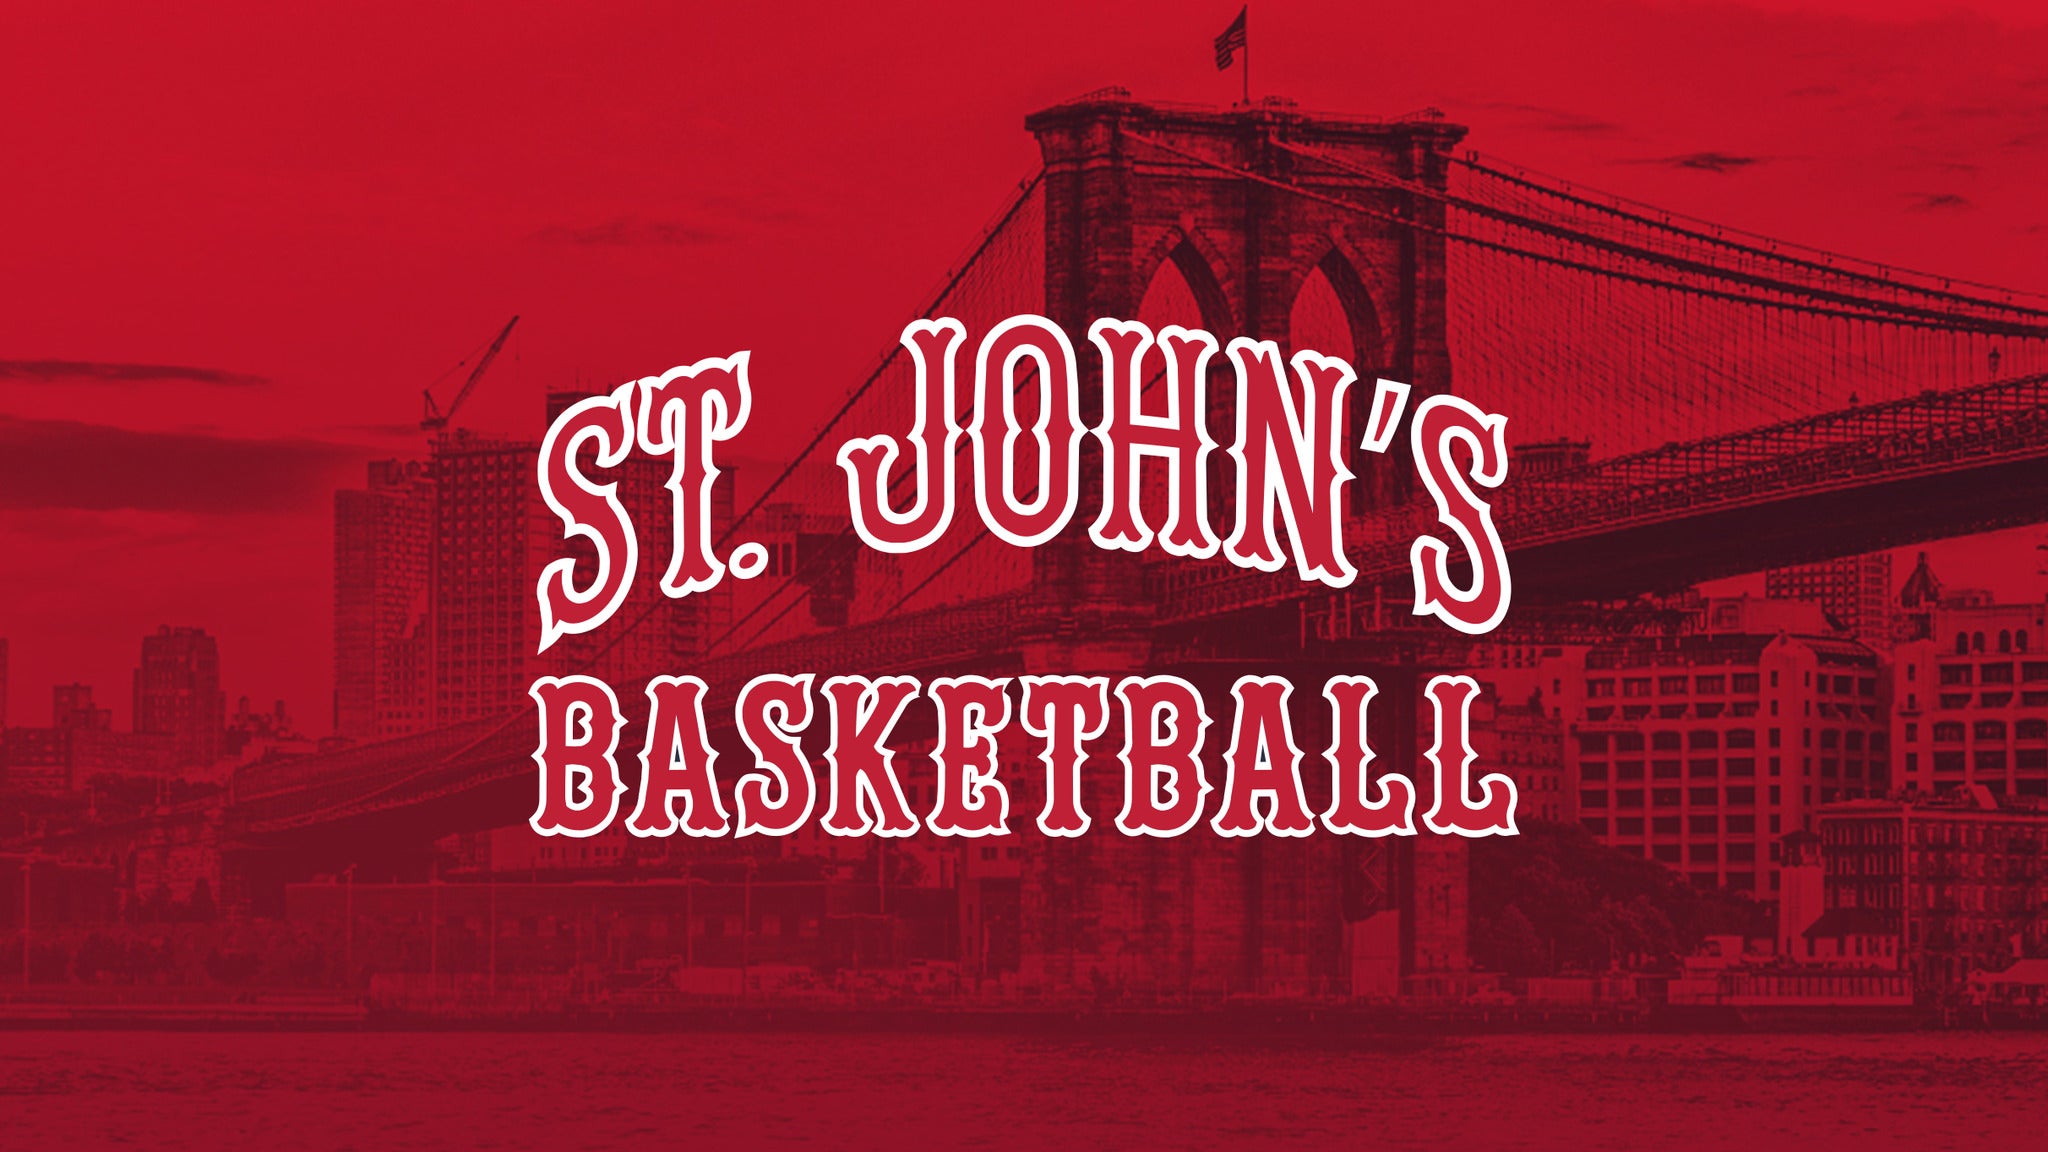 St. John's V DePaul Men's Basketball pre-sale code for advance tickets in Belmont Park - Long Island